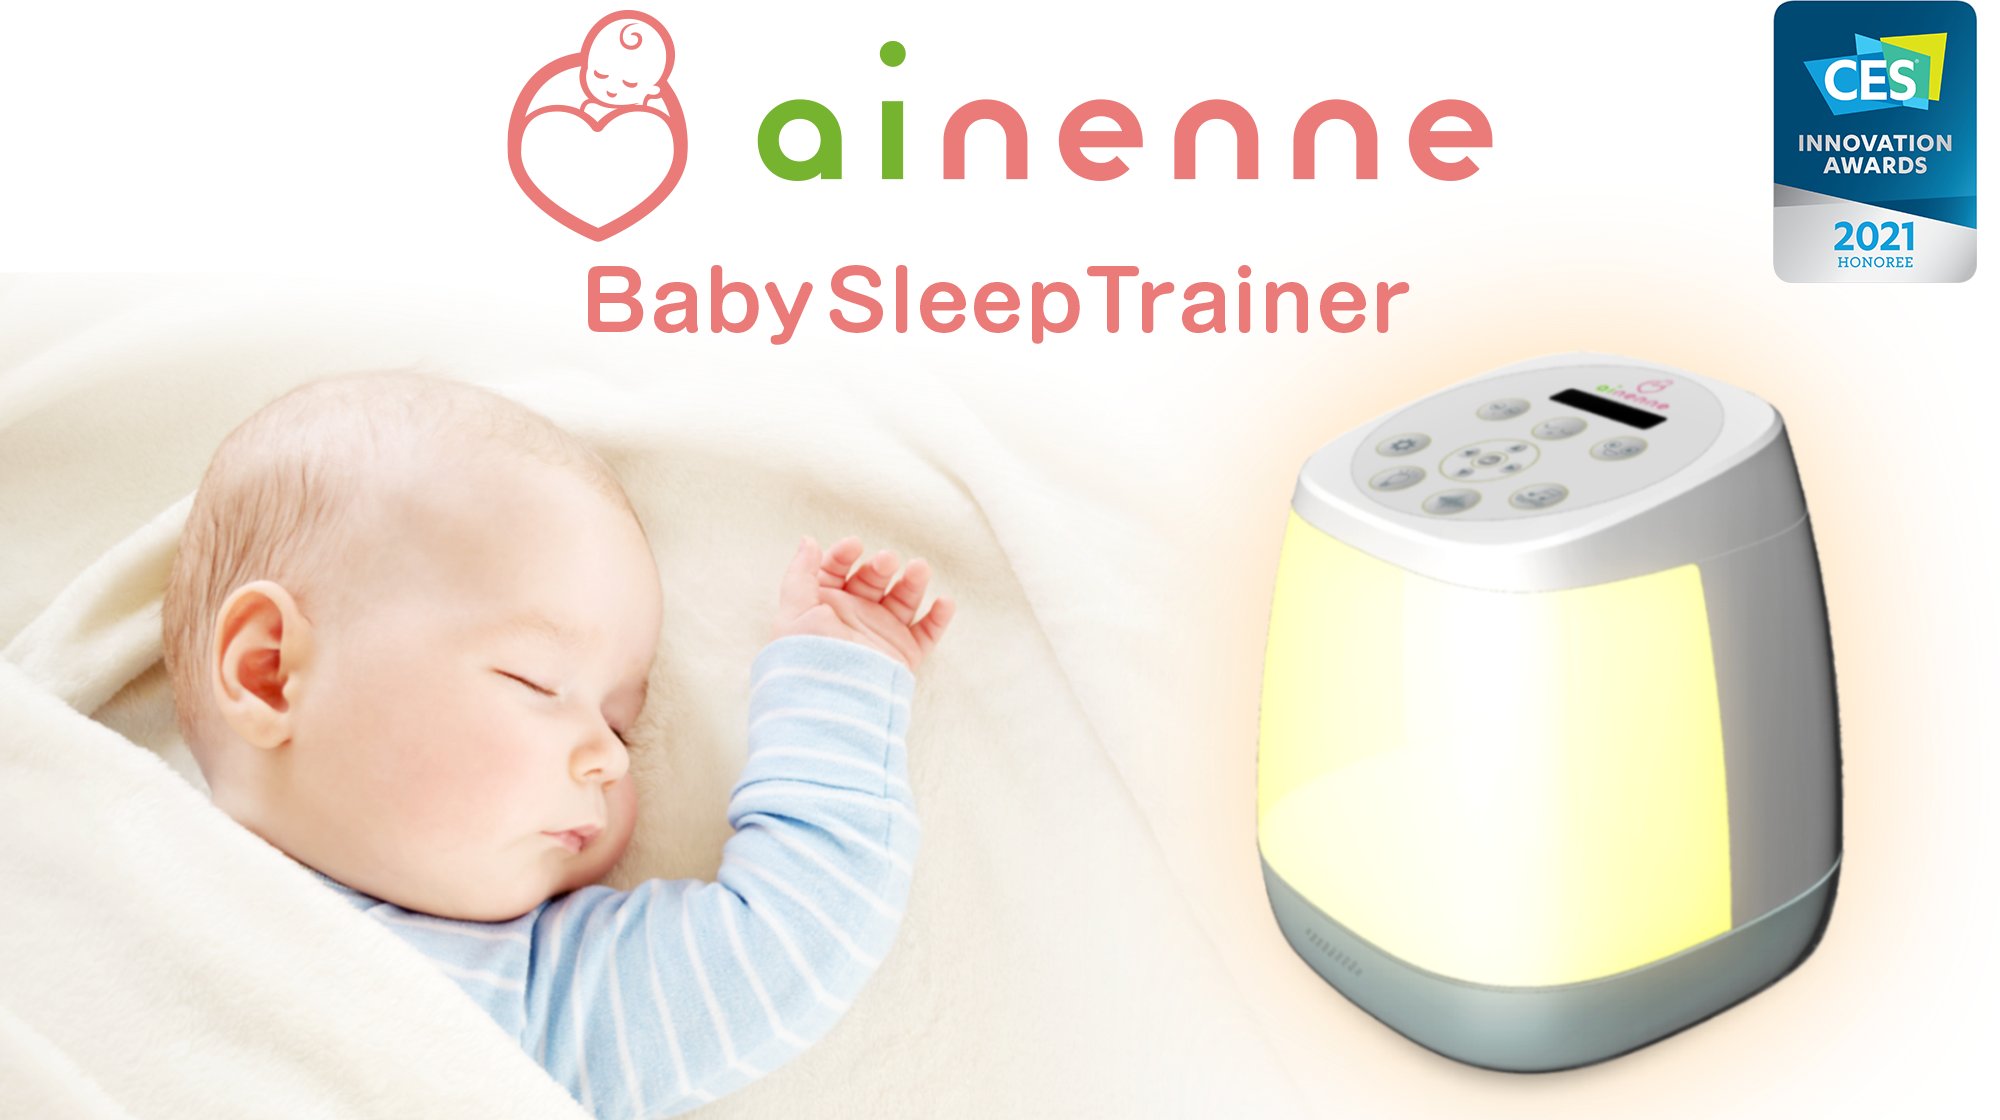 赤ちゃんの睡眠を支援するデバイス Ainenne がces 21 Innovation Awardsを受賞 株式会社ファーストアセントのプレスリリース